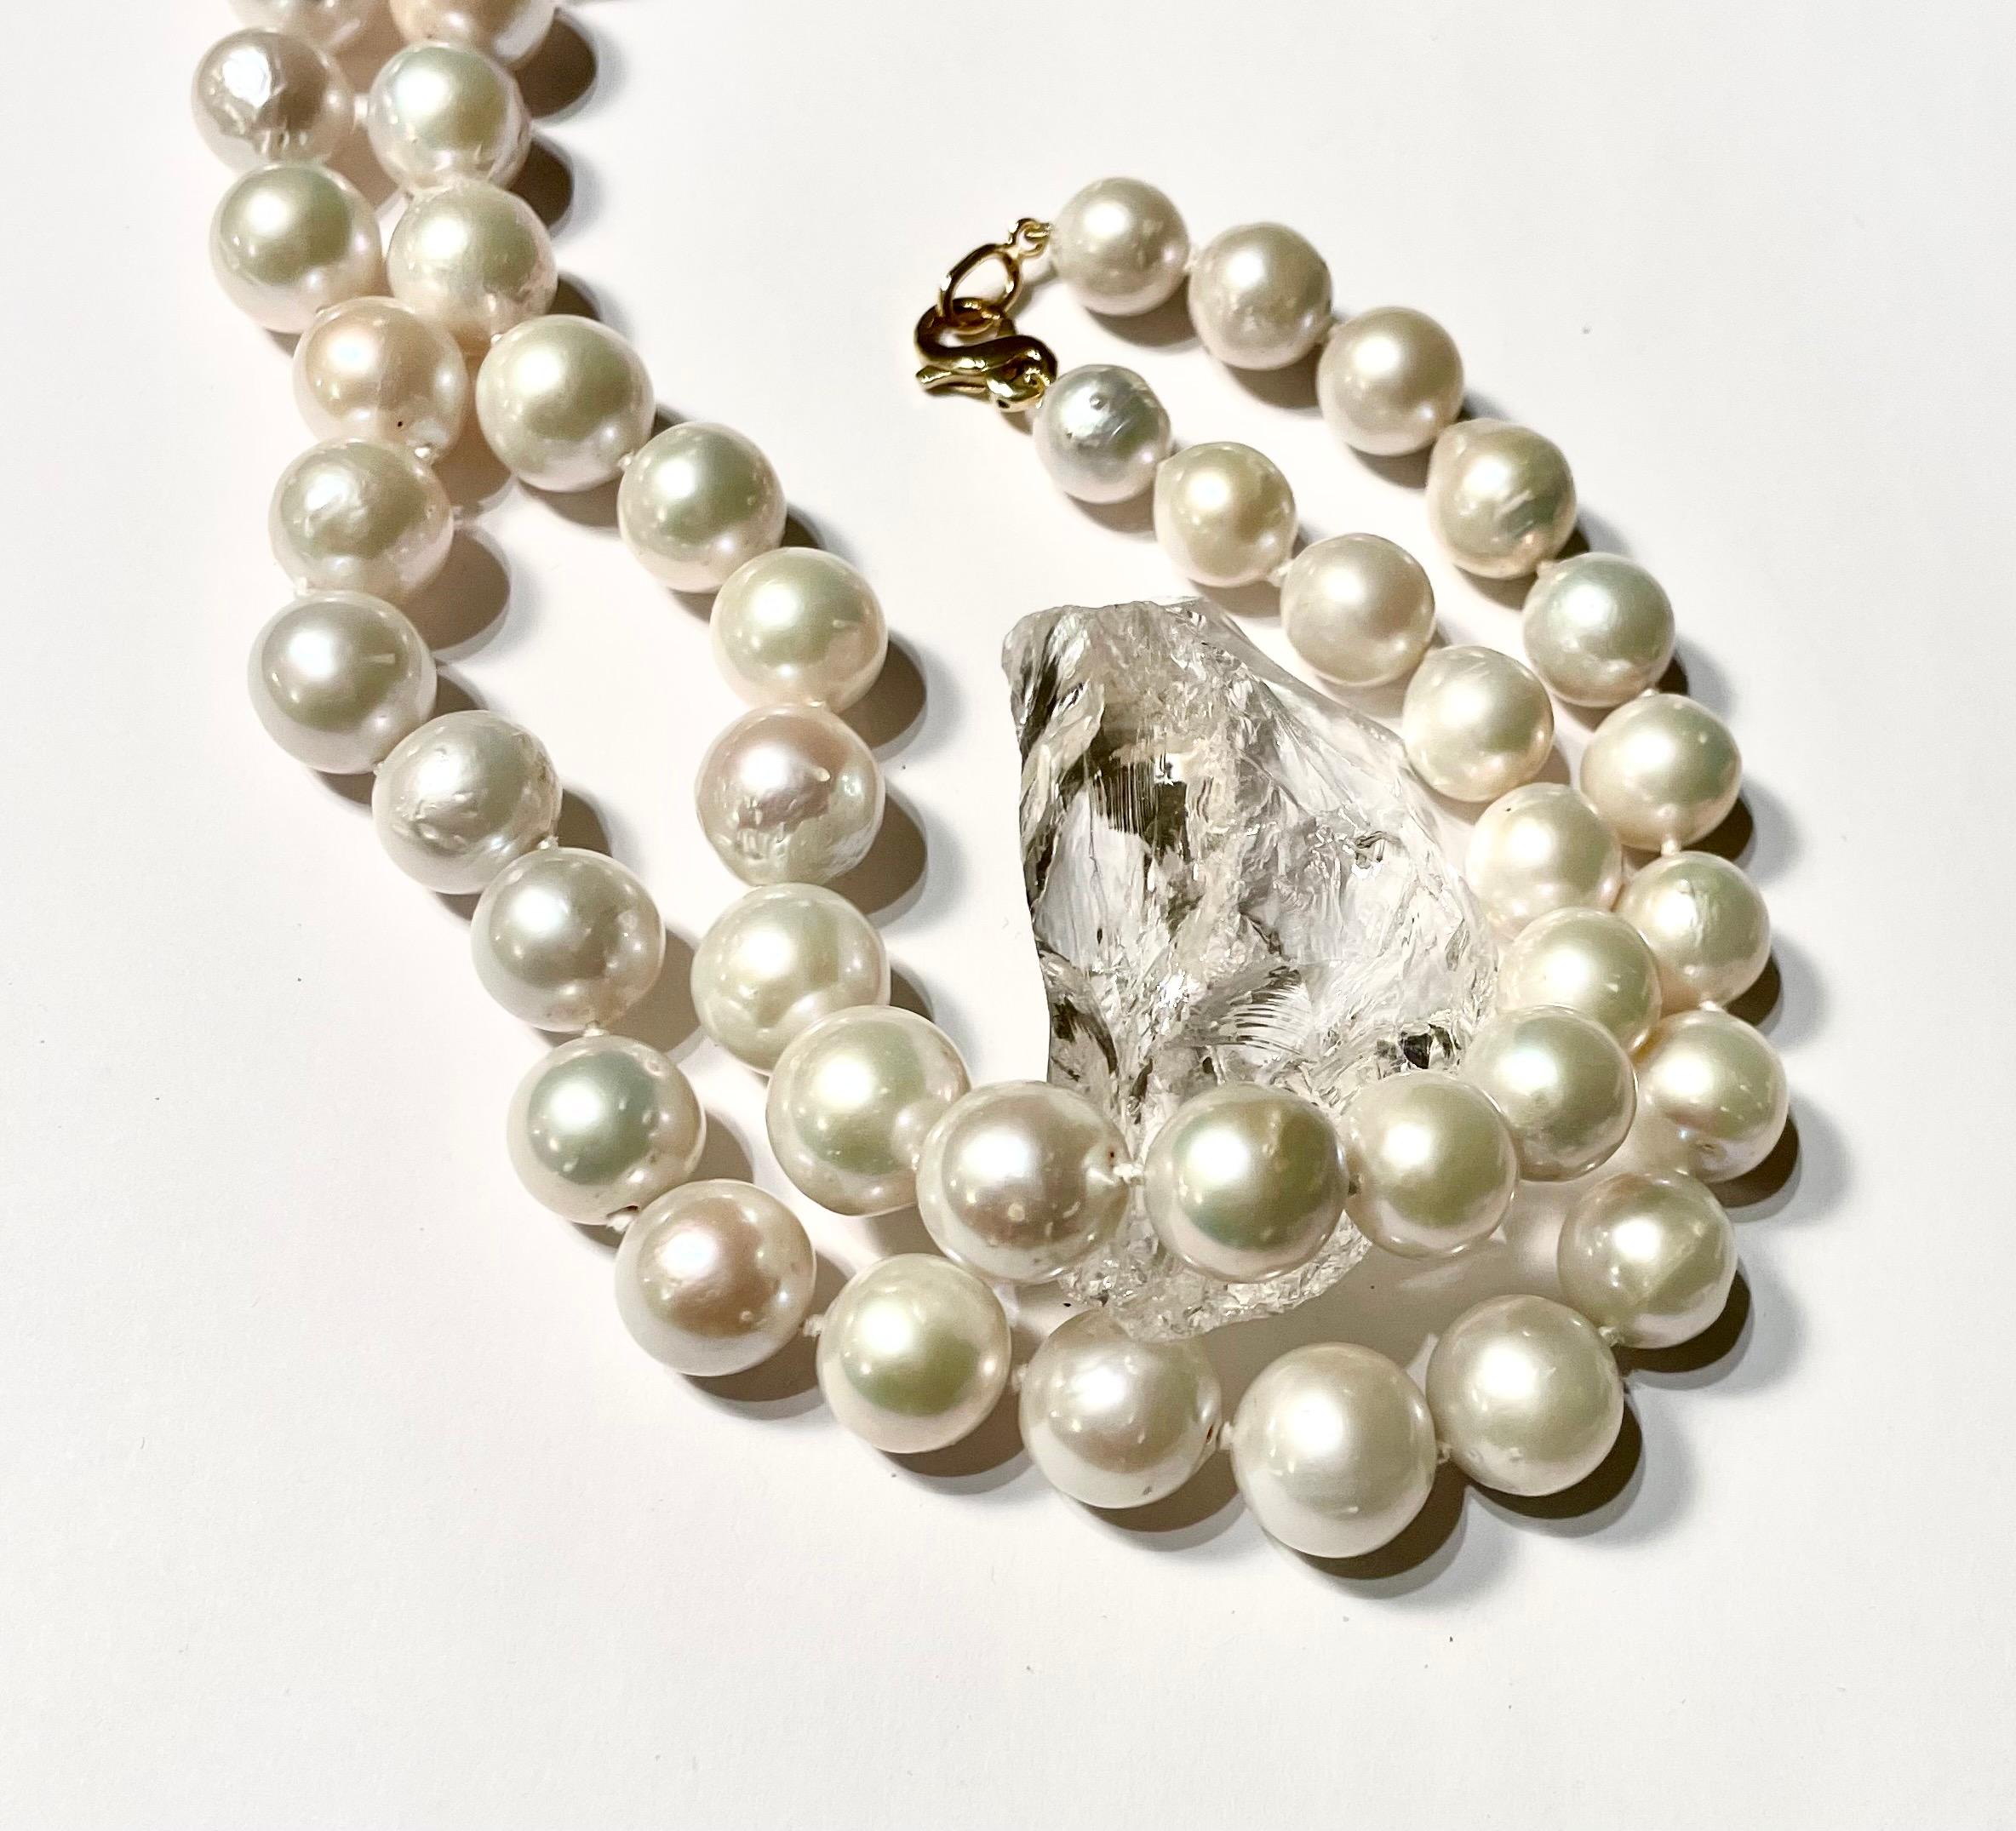 Description
Perles d'eau douce rondes blanches de 11,5 à 14,5 mm, or jaune 14 carats. peut être doublé.
L'article n° N2445

Matériaux et poids des matériaux
Perles d'eau douce rondes blanches, de 11,5 à 14,5 mm
Or jaune 14